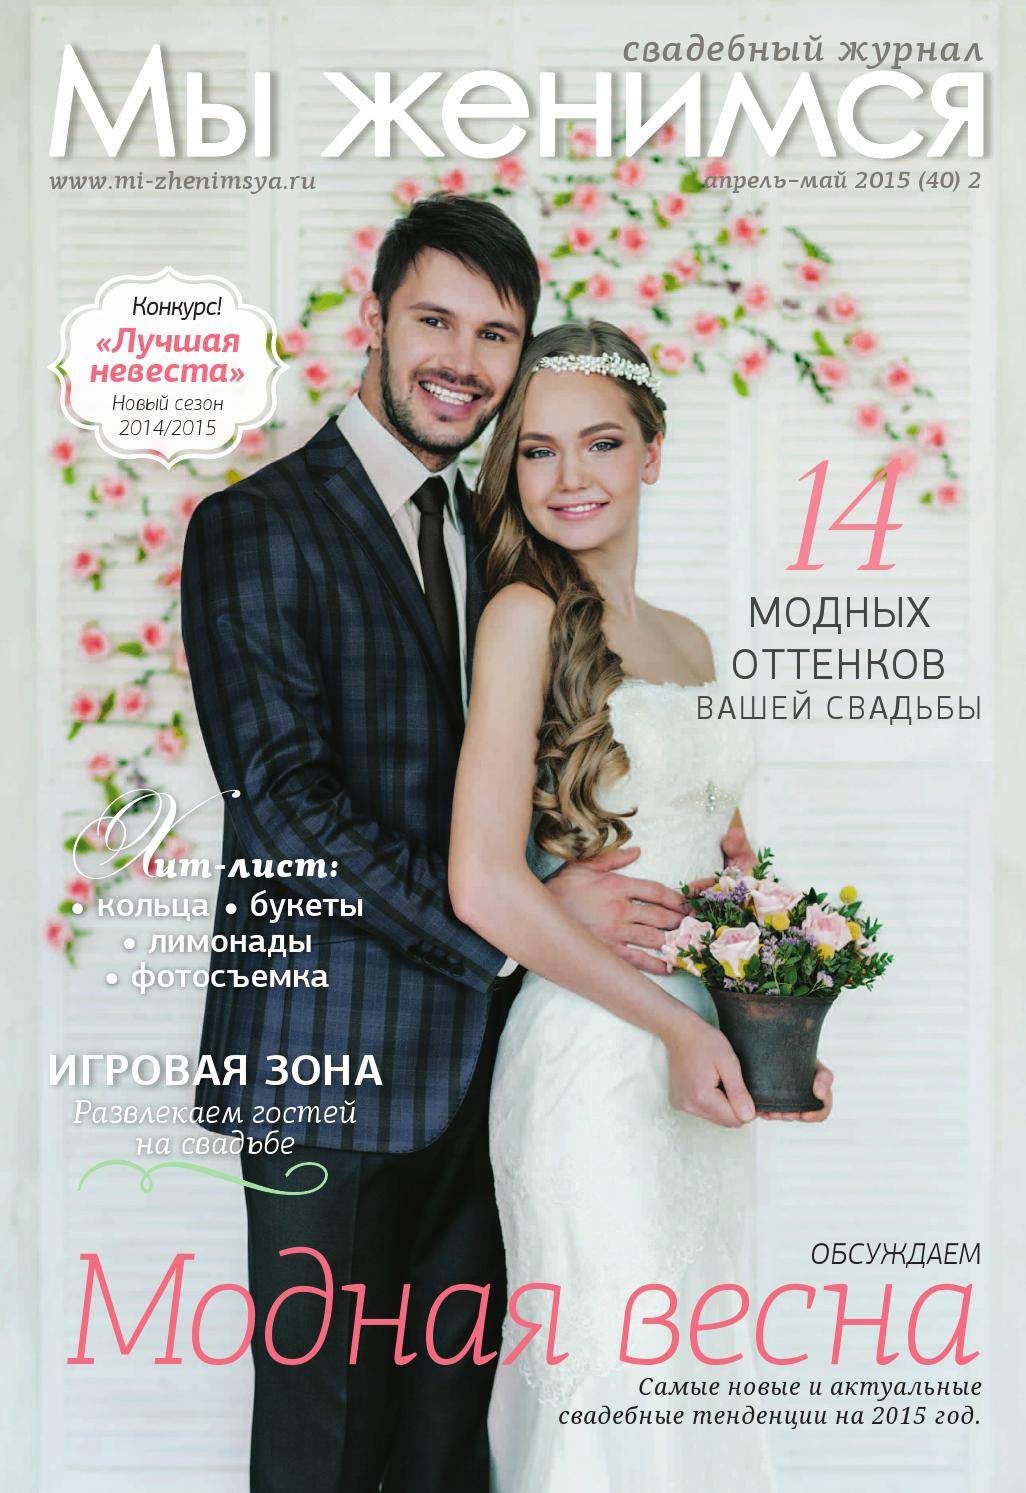 Свадебное платье в русском народном стиле: особенности славянских мотивов